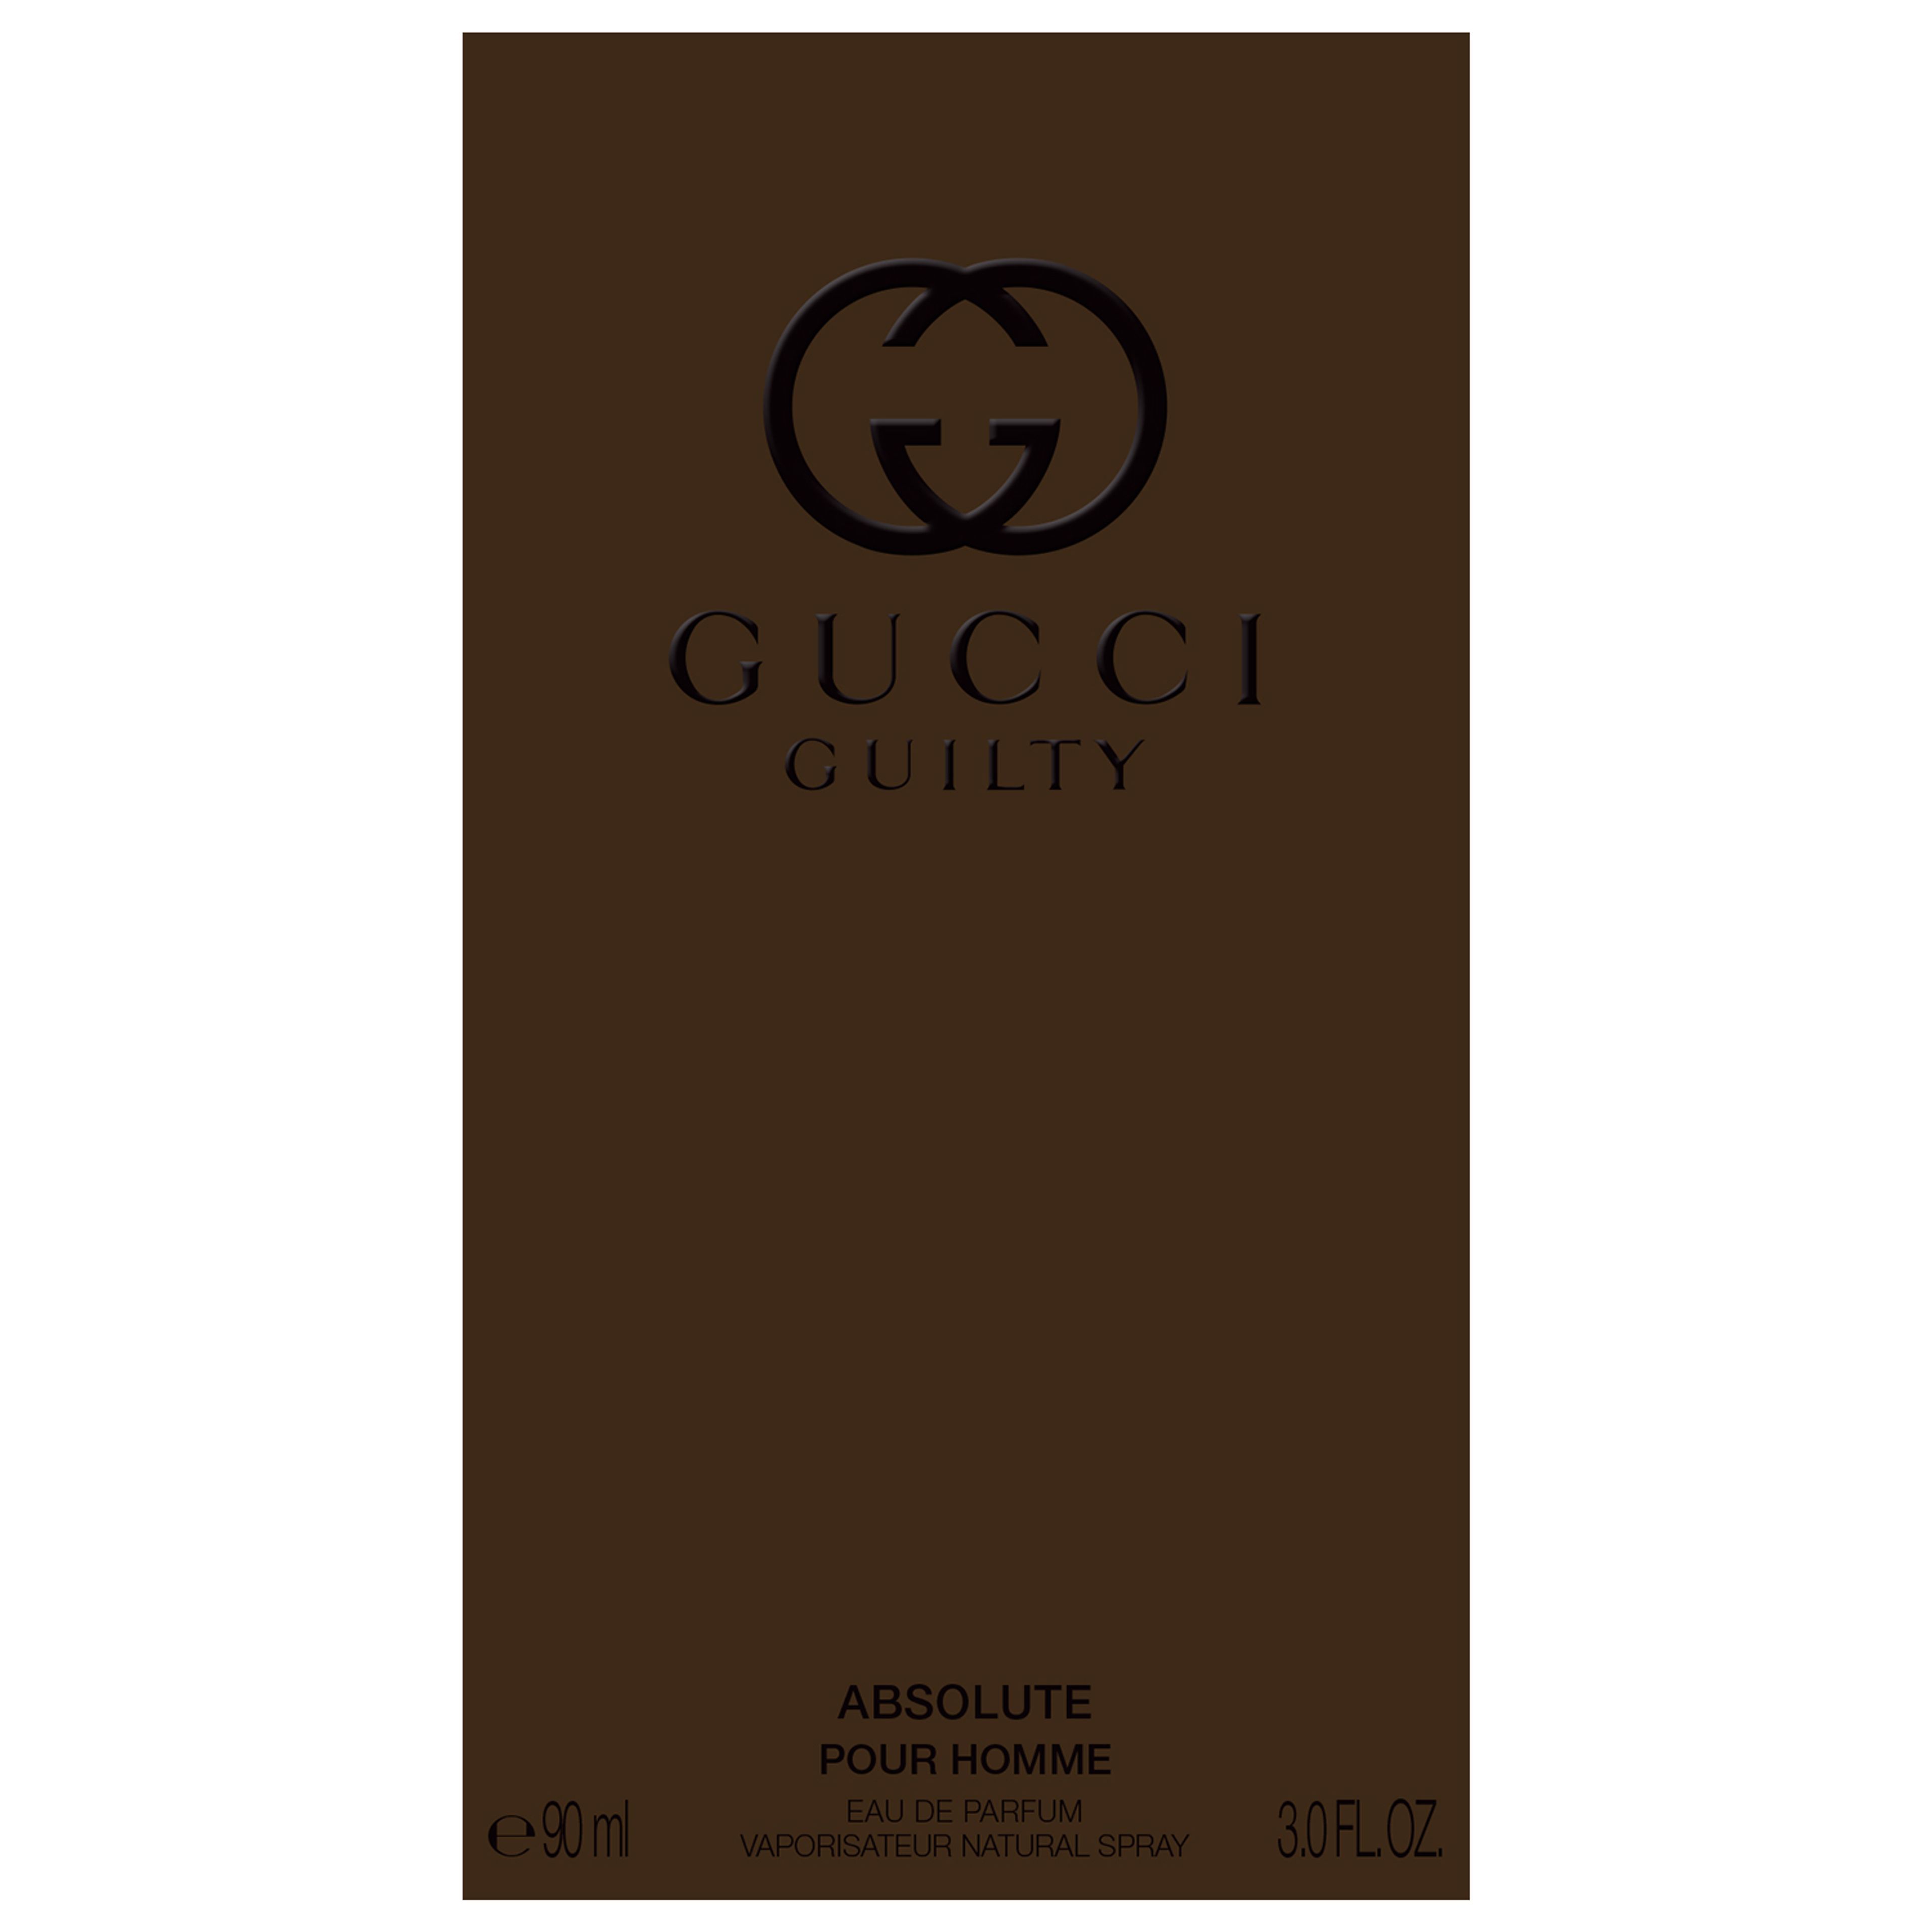 Gucci Gucci Guilty Absolute Pour Homme Eau De Parfum 3